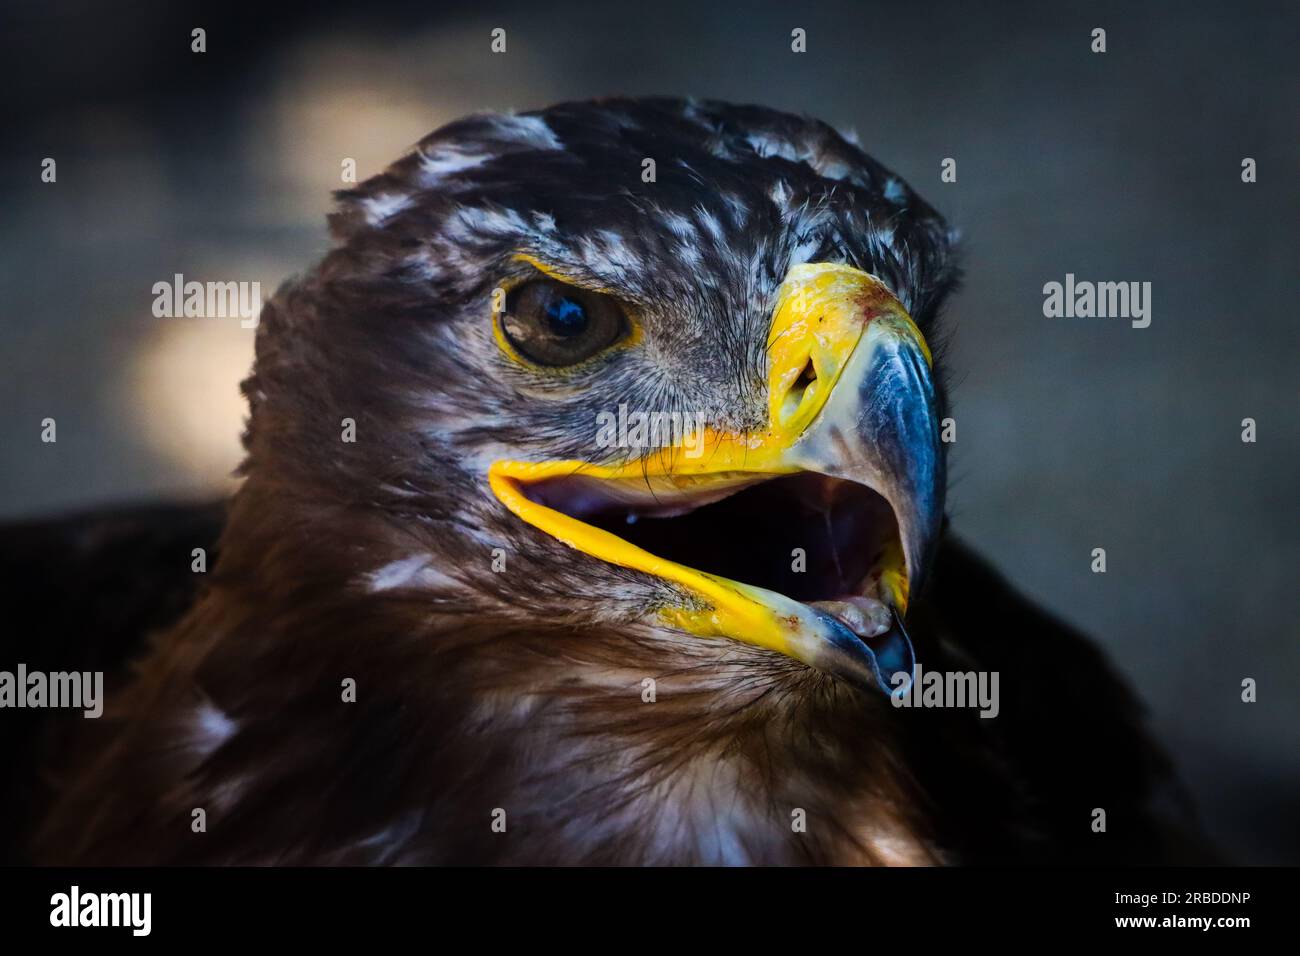 closeup portrait of a golden eagle Stock Photo